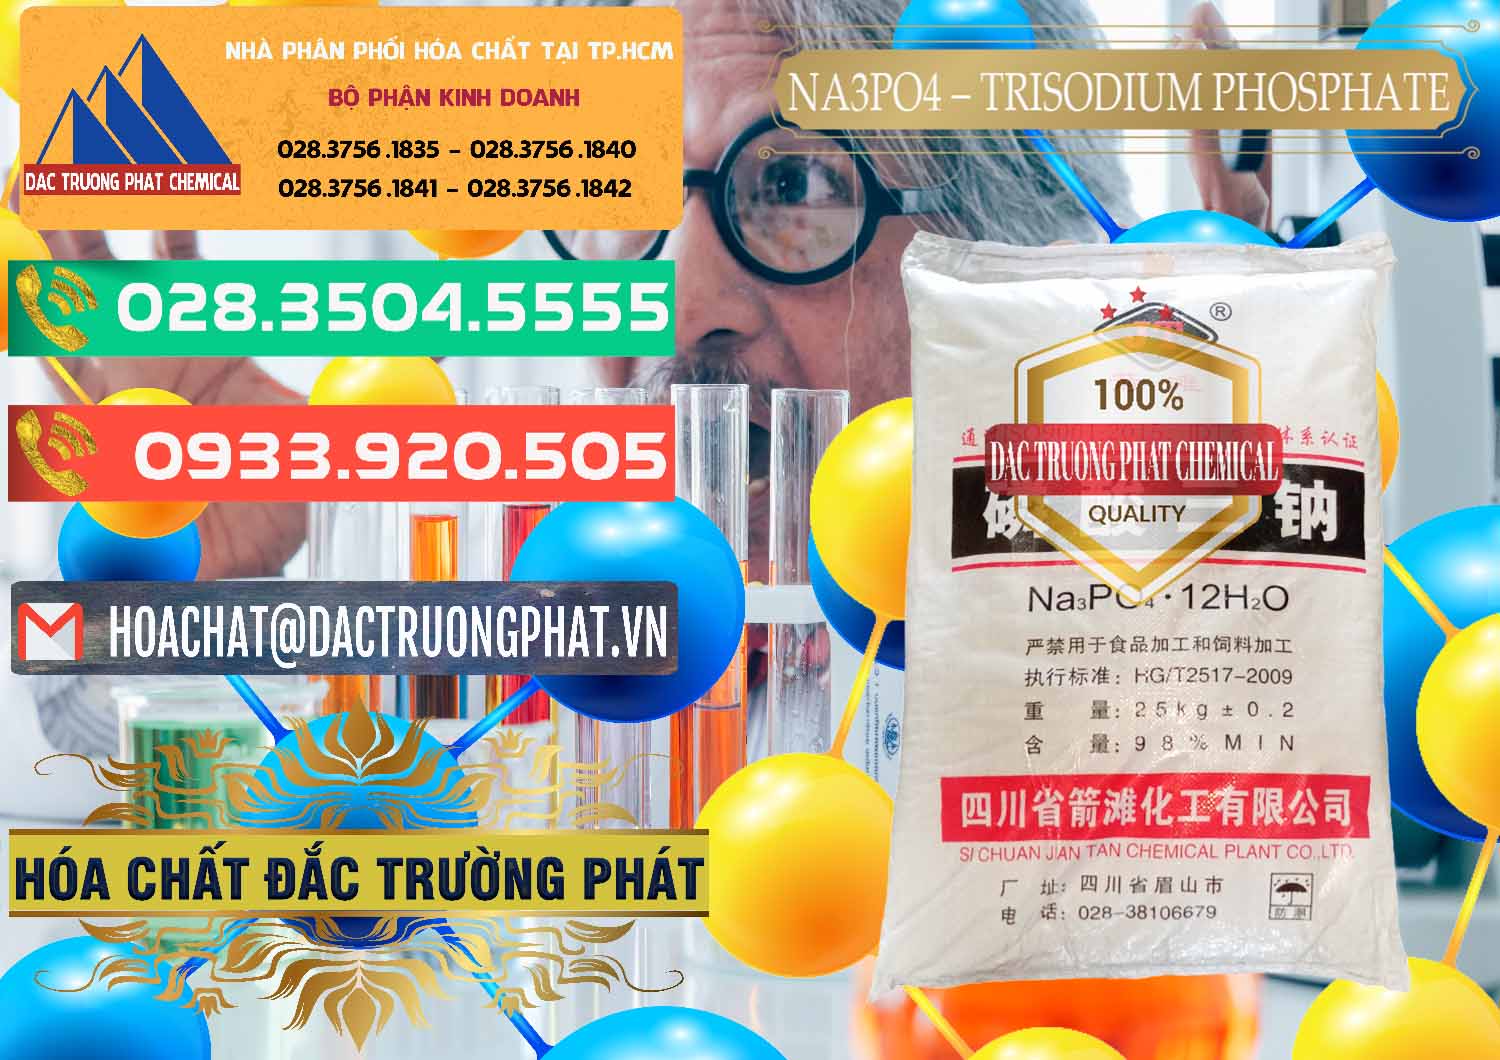 Cty chuyên cung ứng _ bán Na3PO4 – Trisodium Phosphate Trung Quốc China JT - 0102 - Cty chuyên cung cấp ( kinh doanh ) hóa chất tại TP.HCM - congtyhoachat.com.vn